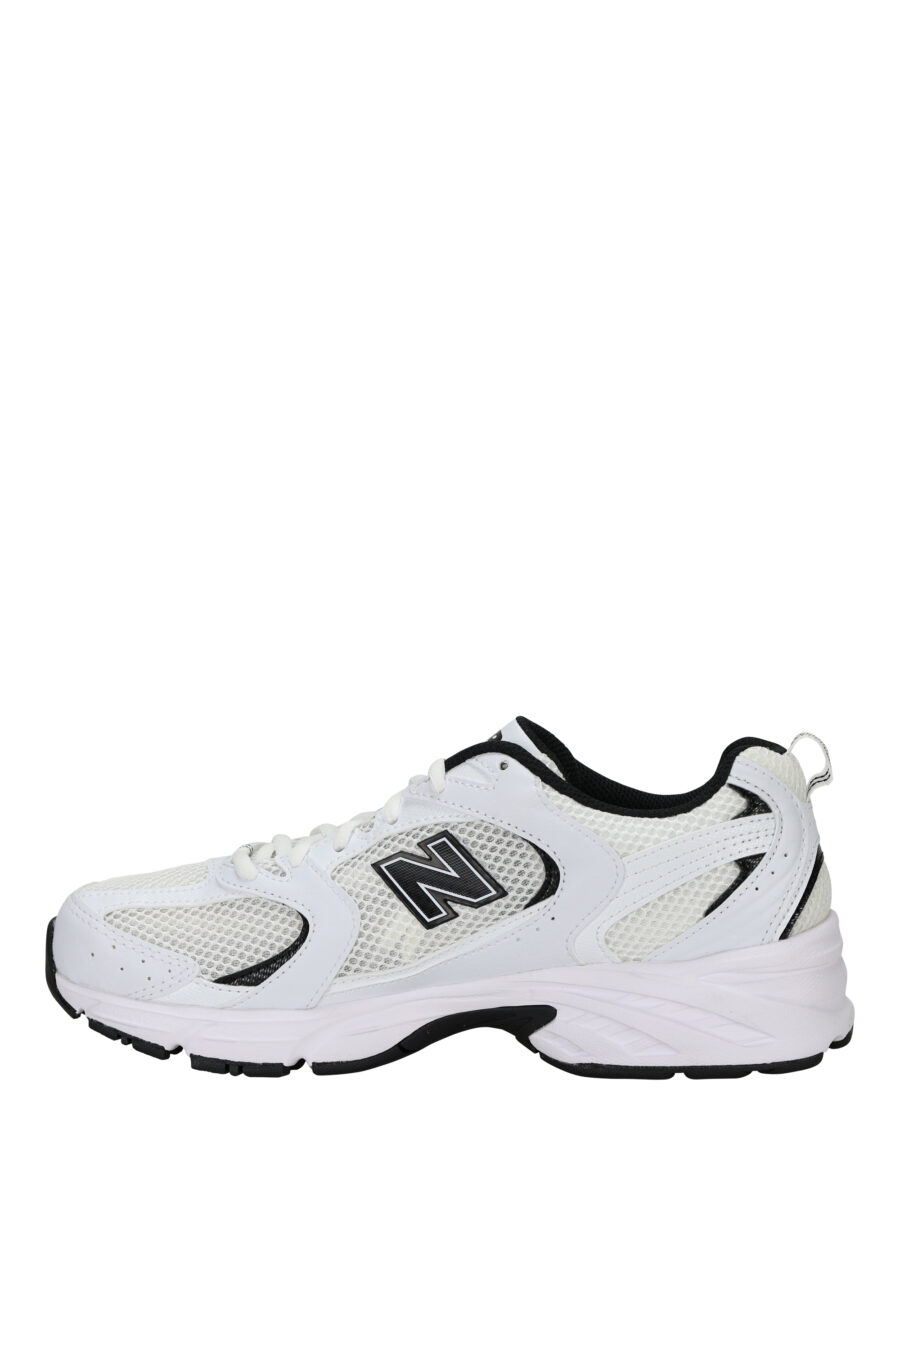 Zapatillas blancas con negro "530" con logo "N" negro - 196071167954 2